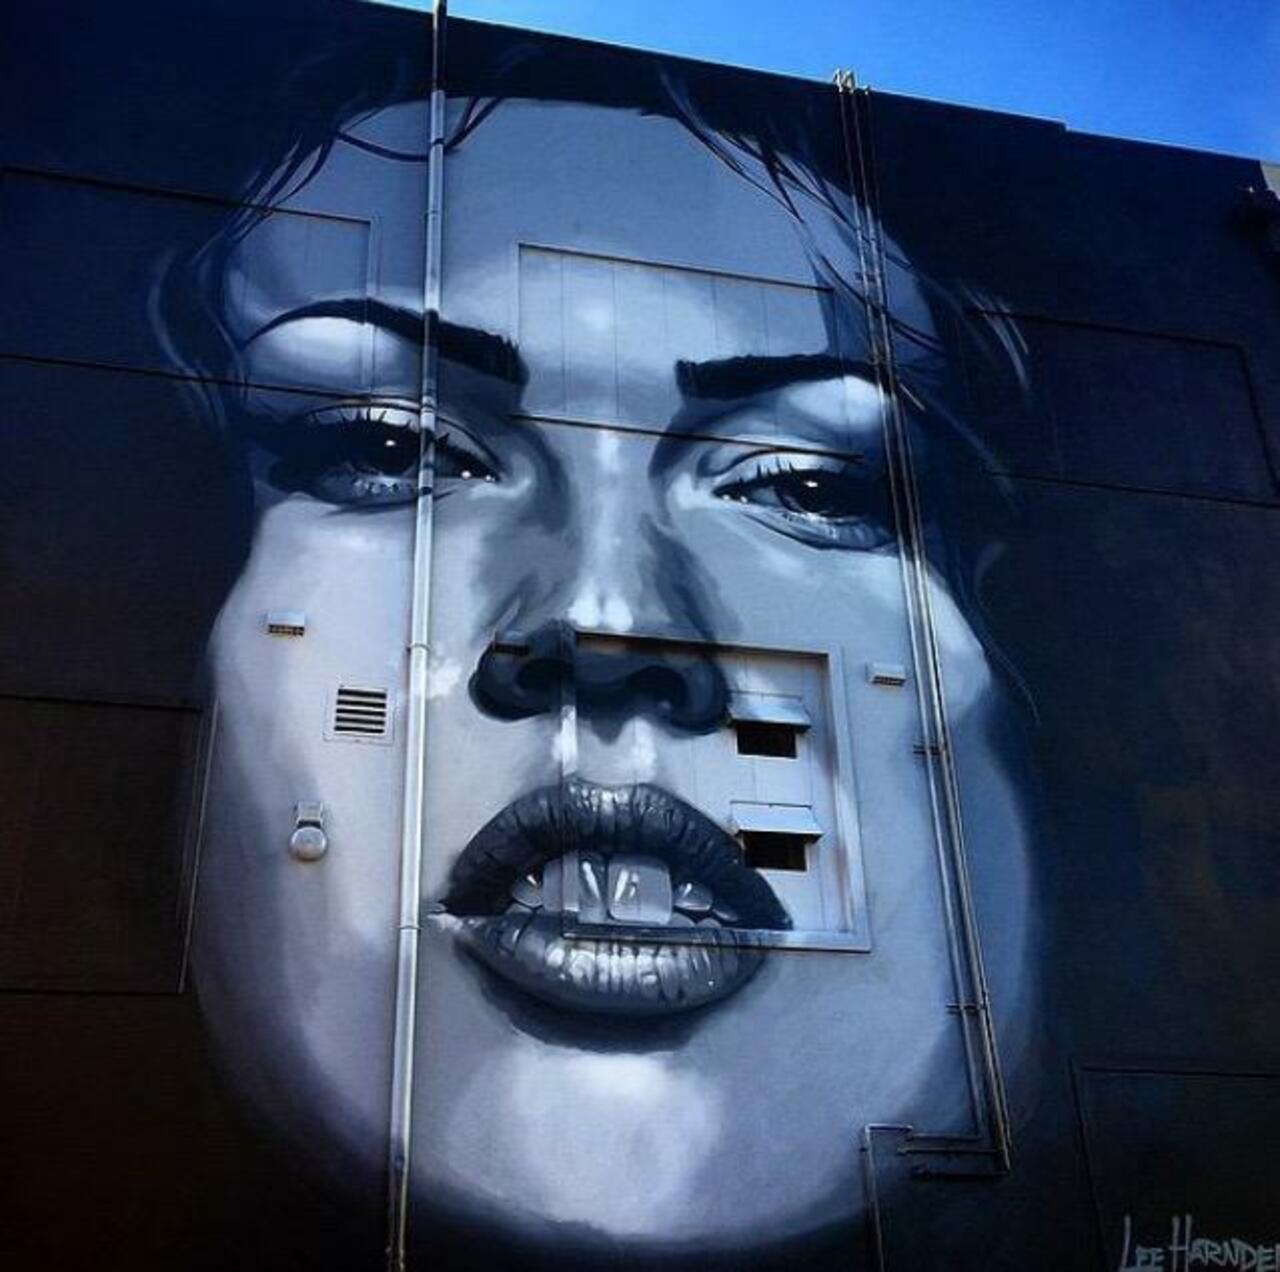 Street Art by Irocka 

#art #graffiti #mural #streetart http://t.co/dXHNGZxh43